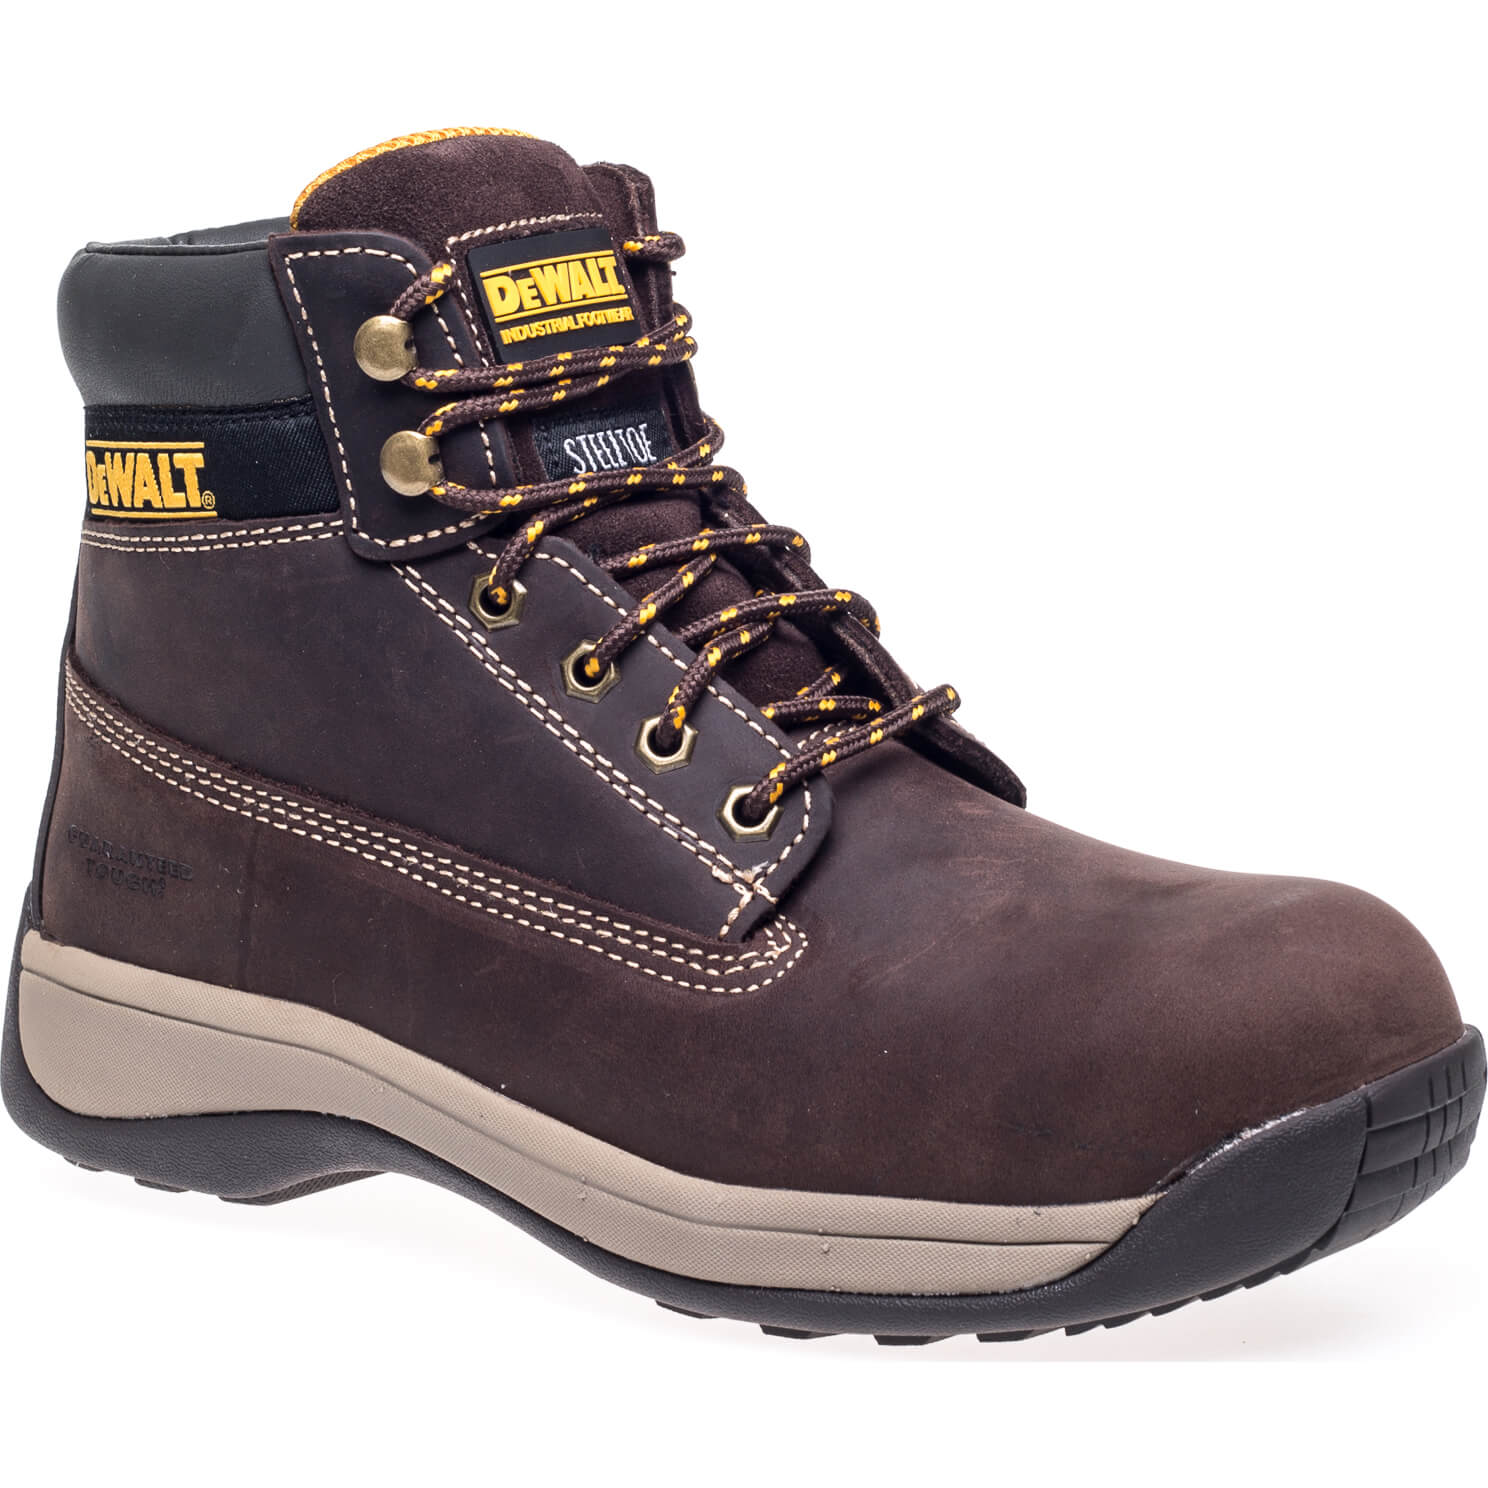 Image of DeWalt Apprentice Nubuck Safety Hiker Boots Brown Size 10